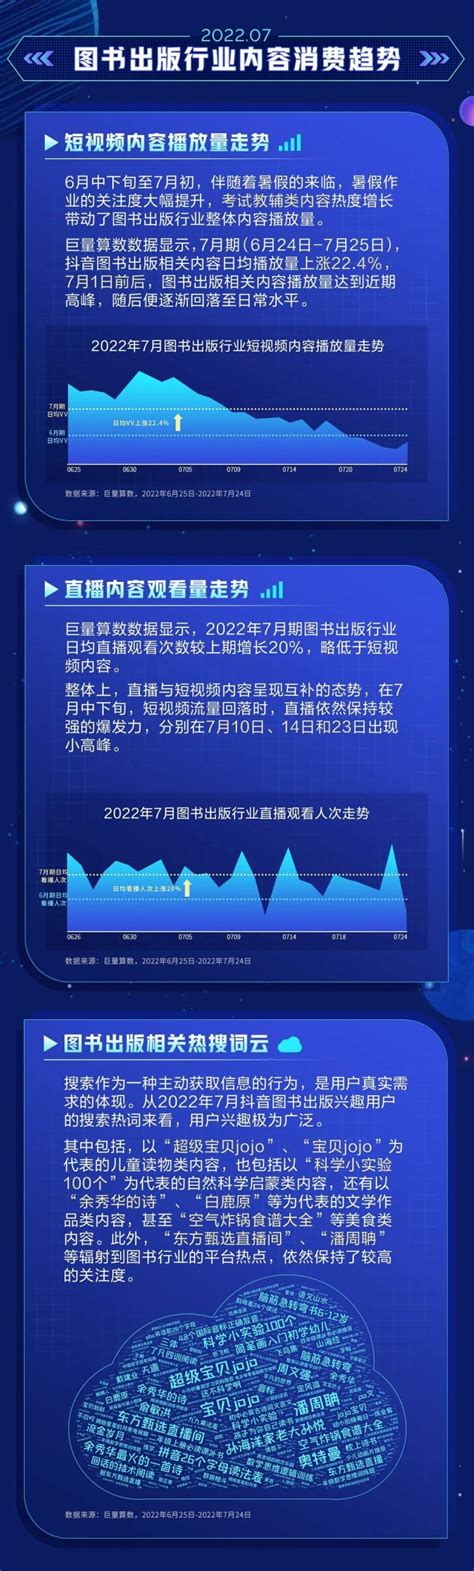 巨量算数：2022年7月DouBook月度算数报告 | 互联网数据资讯网-199IT | 中文互联网数据研究资讯中心-199IT